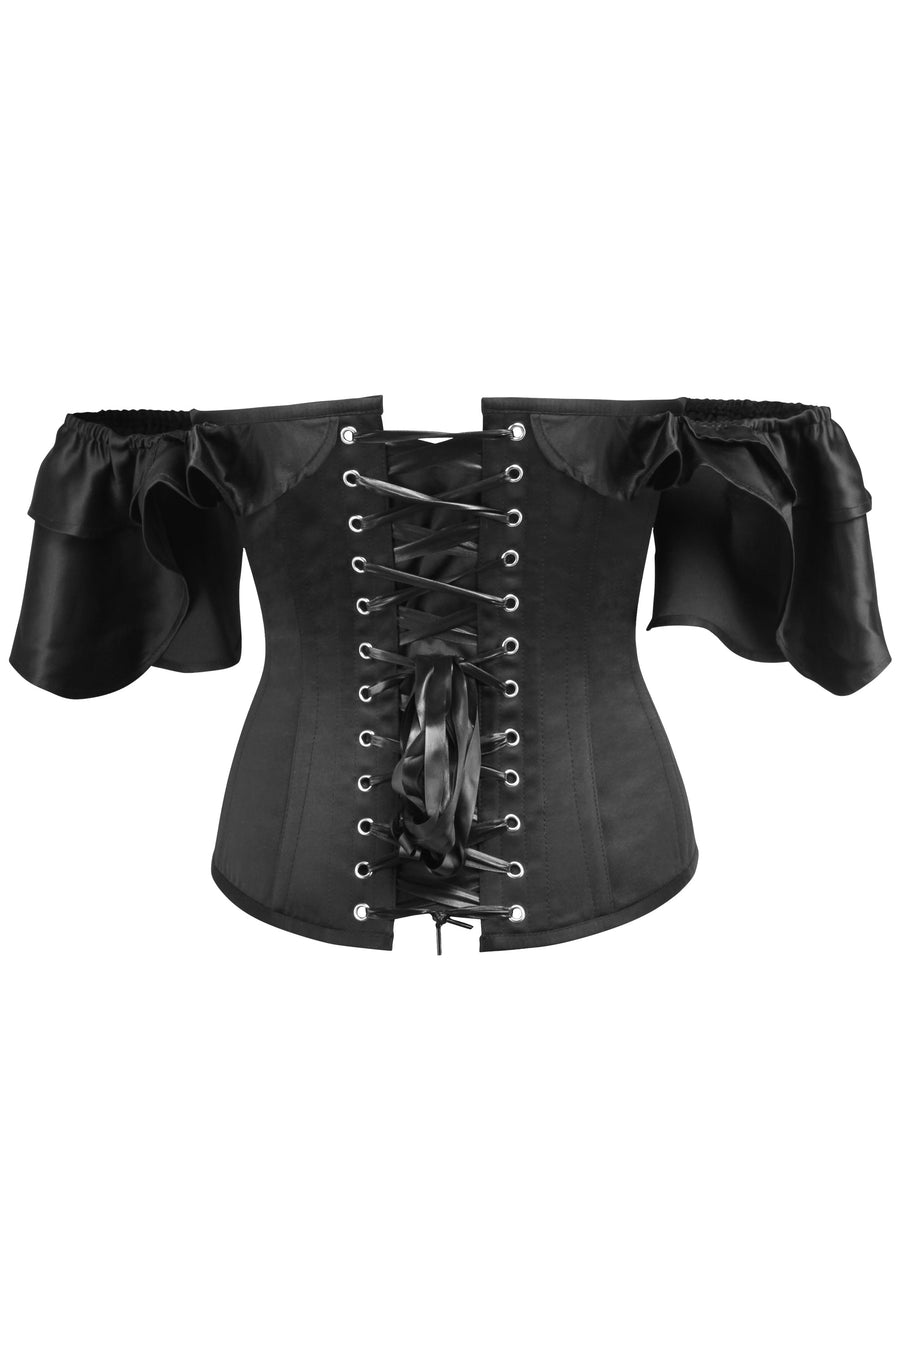 https://corset-story-ca.com/cdn/shop/products/TE-0012_900x.jpg?v=1668107823